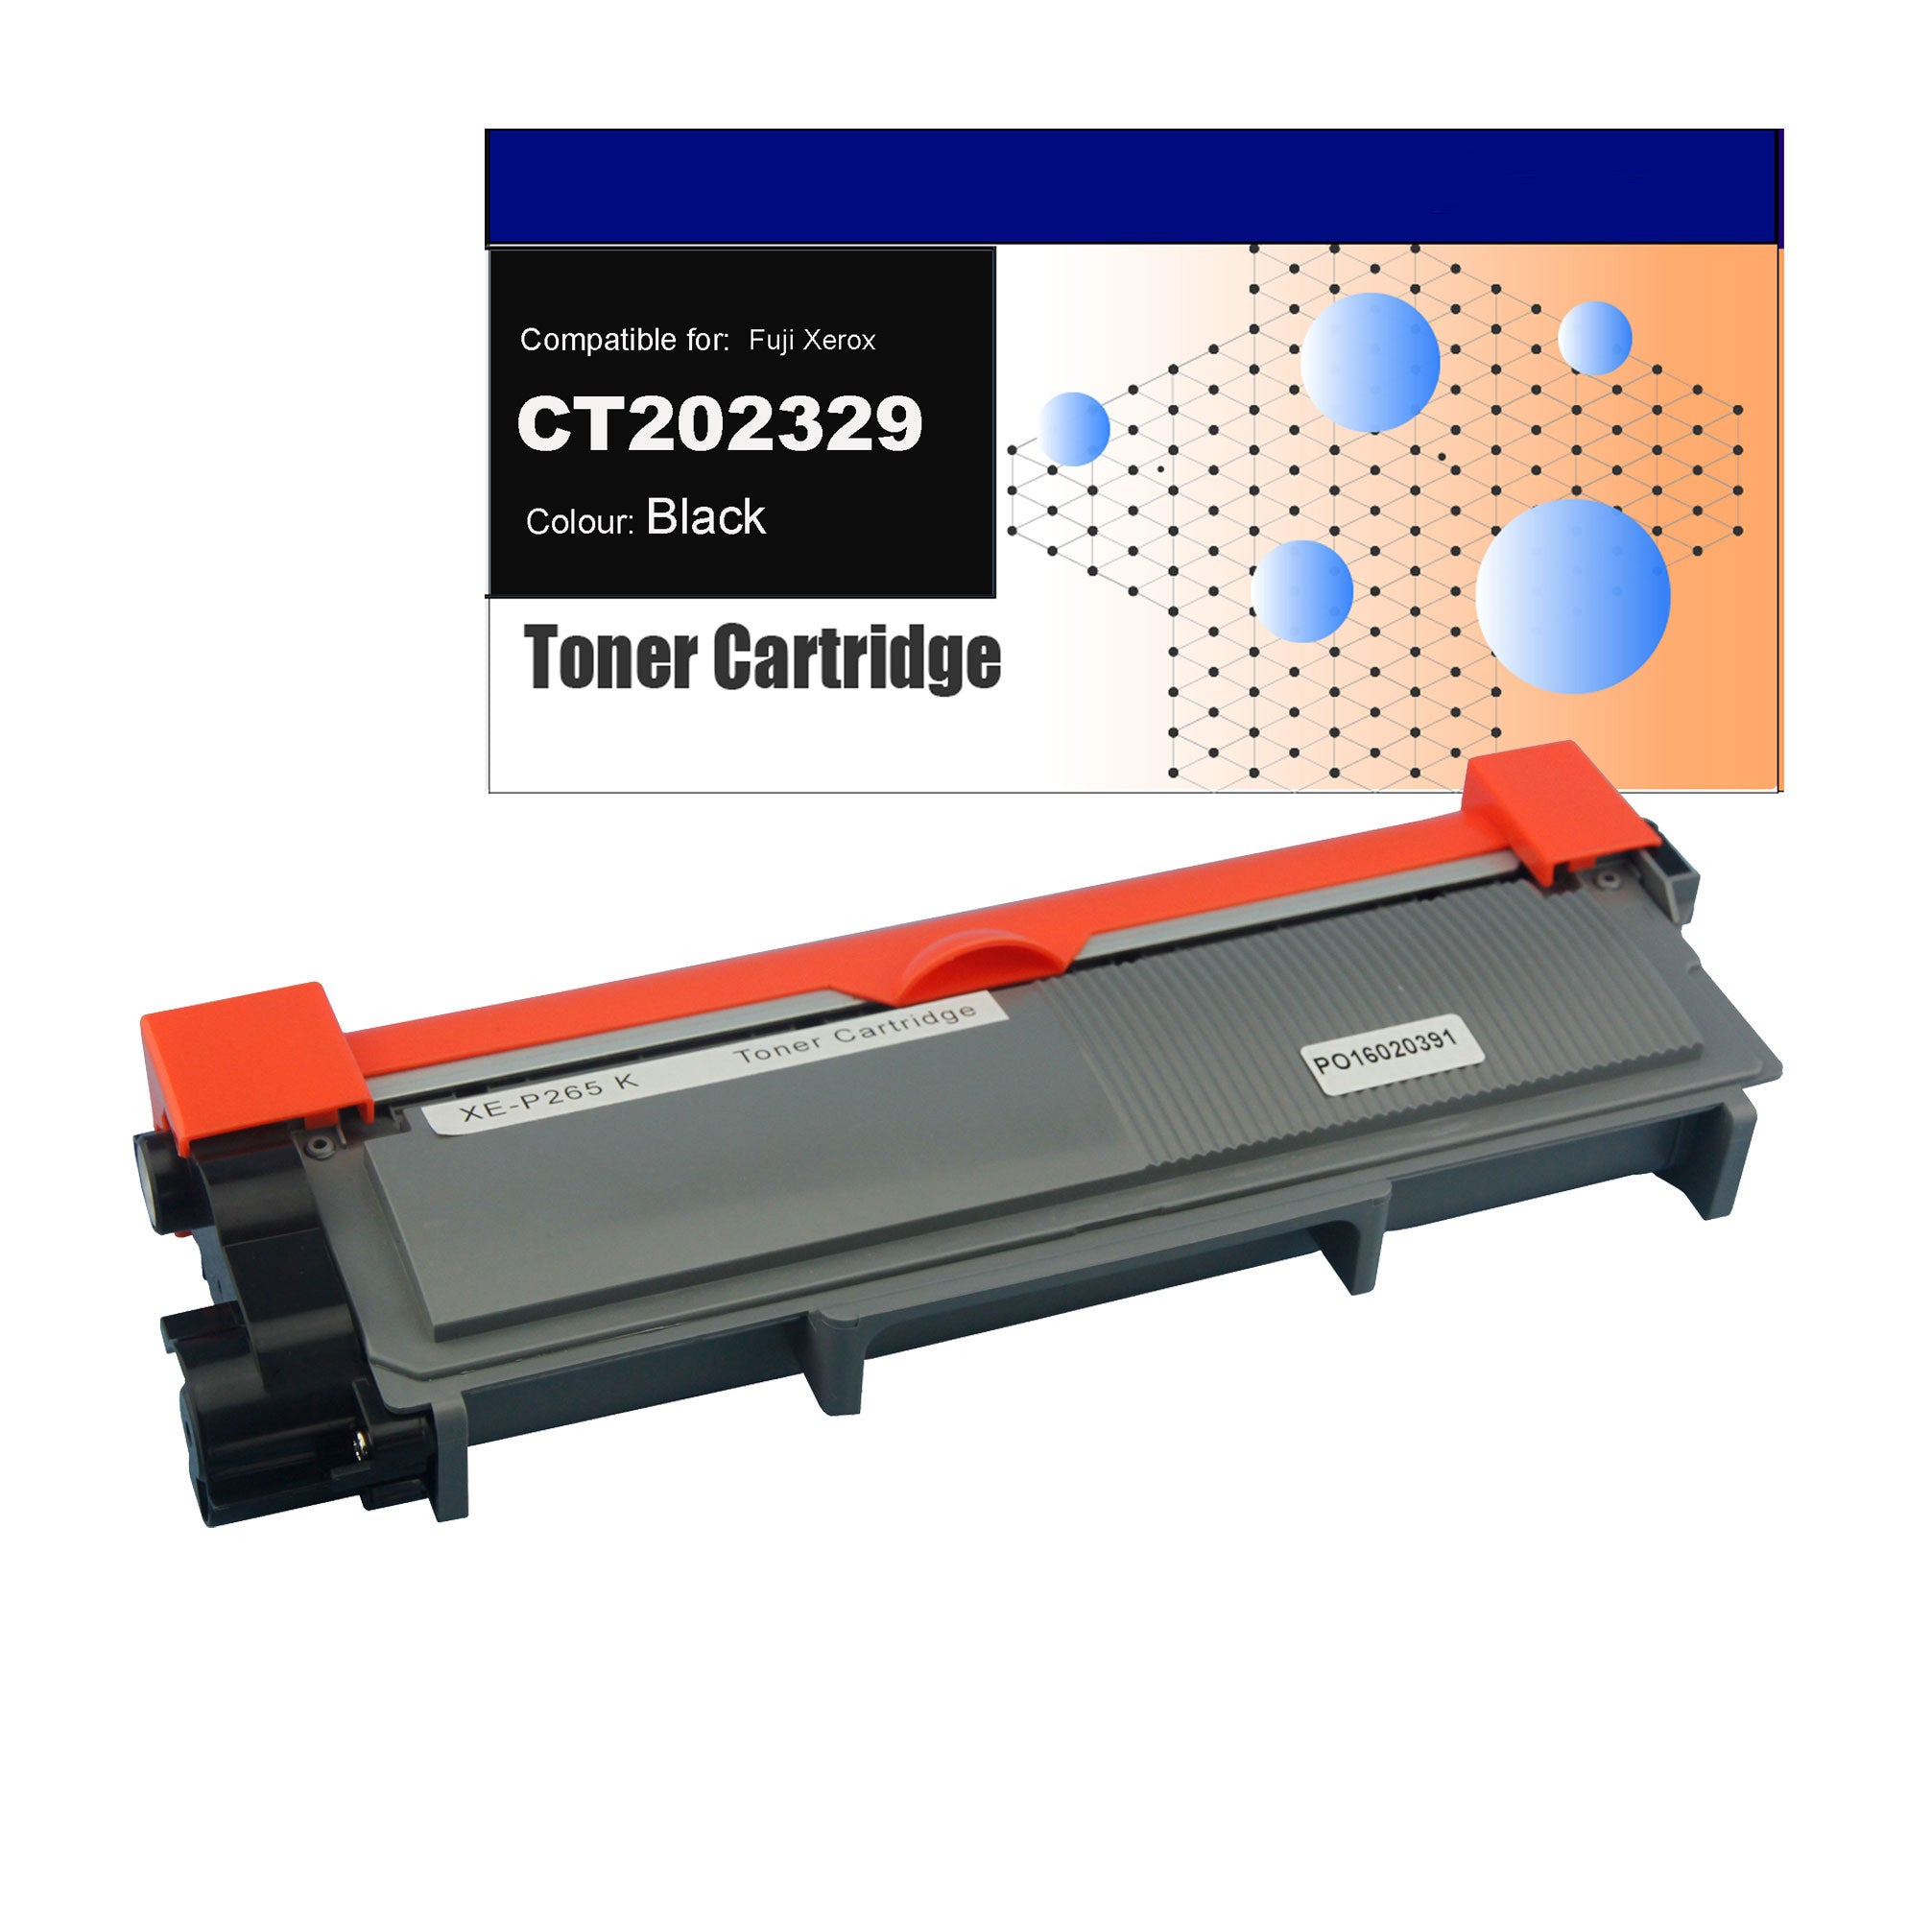 Compatible Toner for Fuji Xerox CT202329 (P265) Black Toner Cartridges